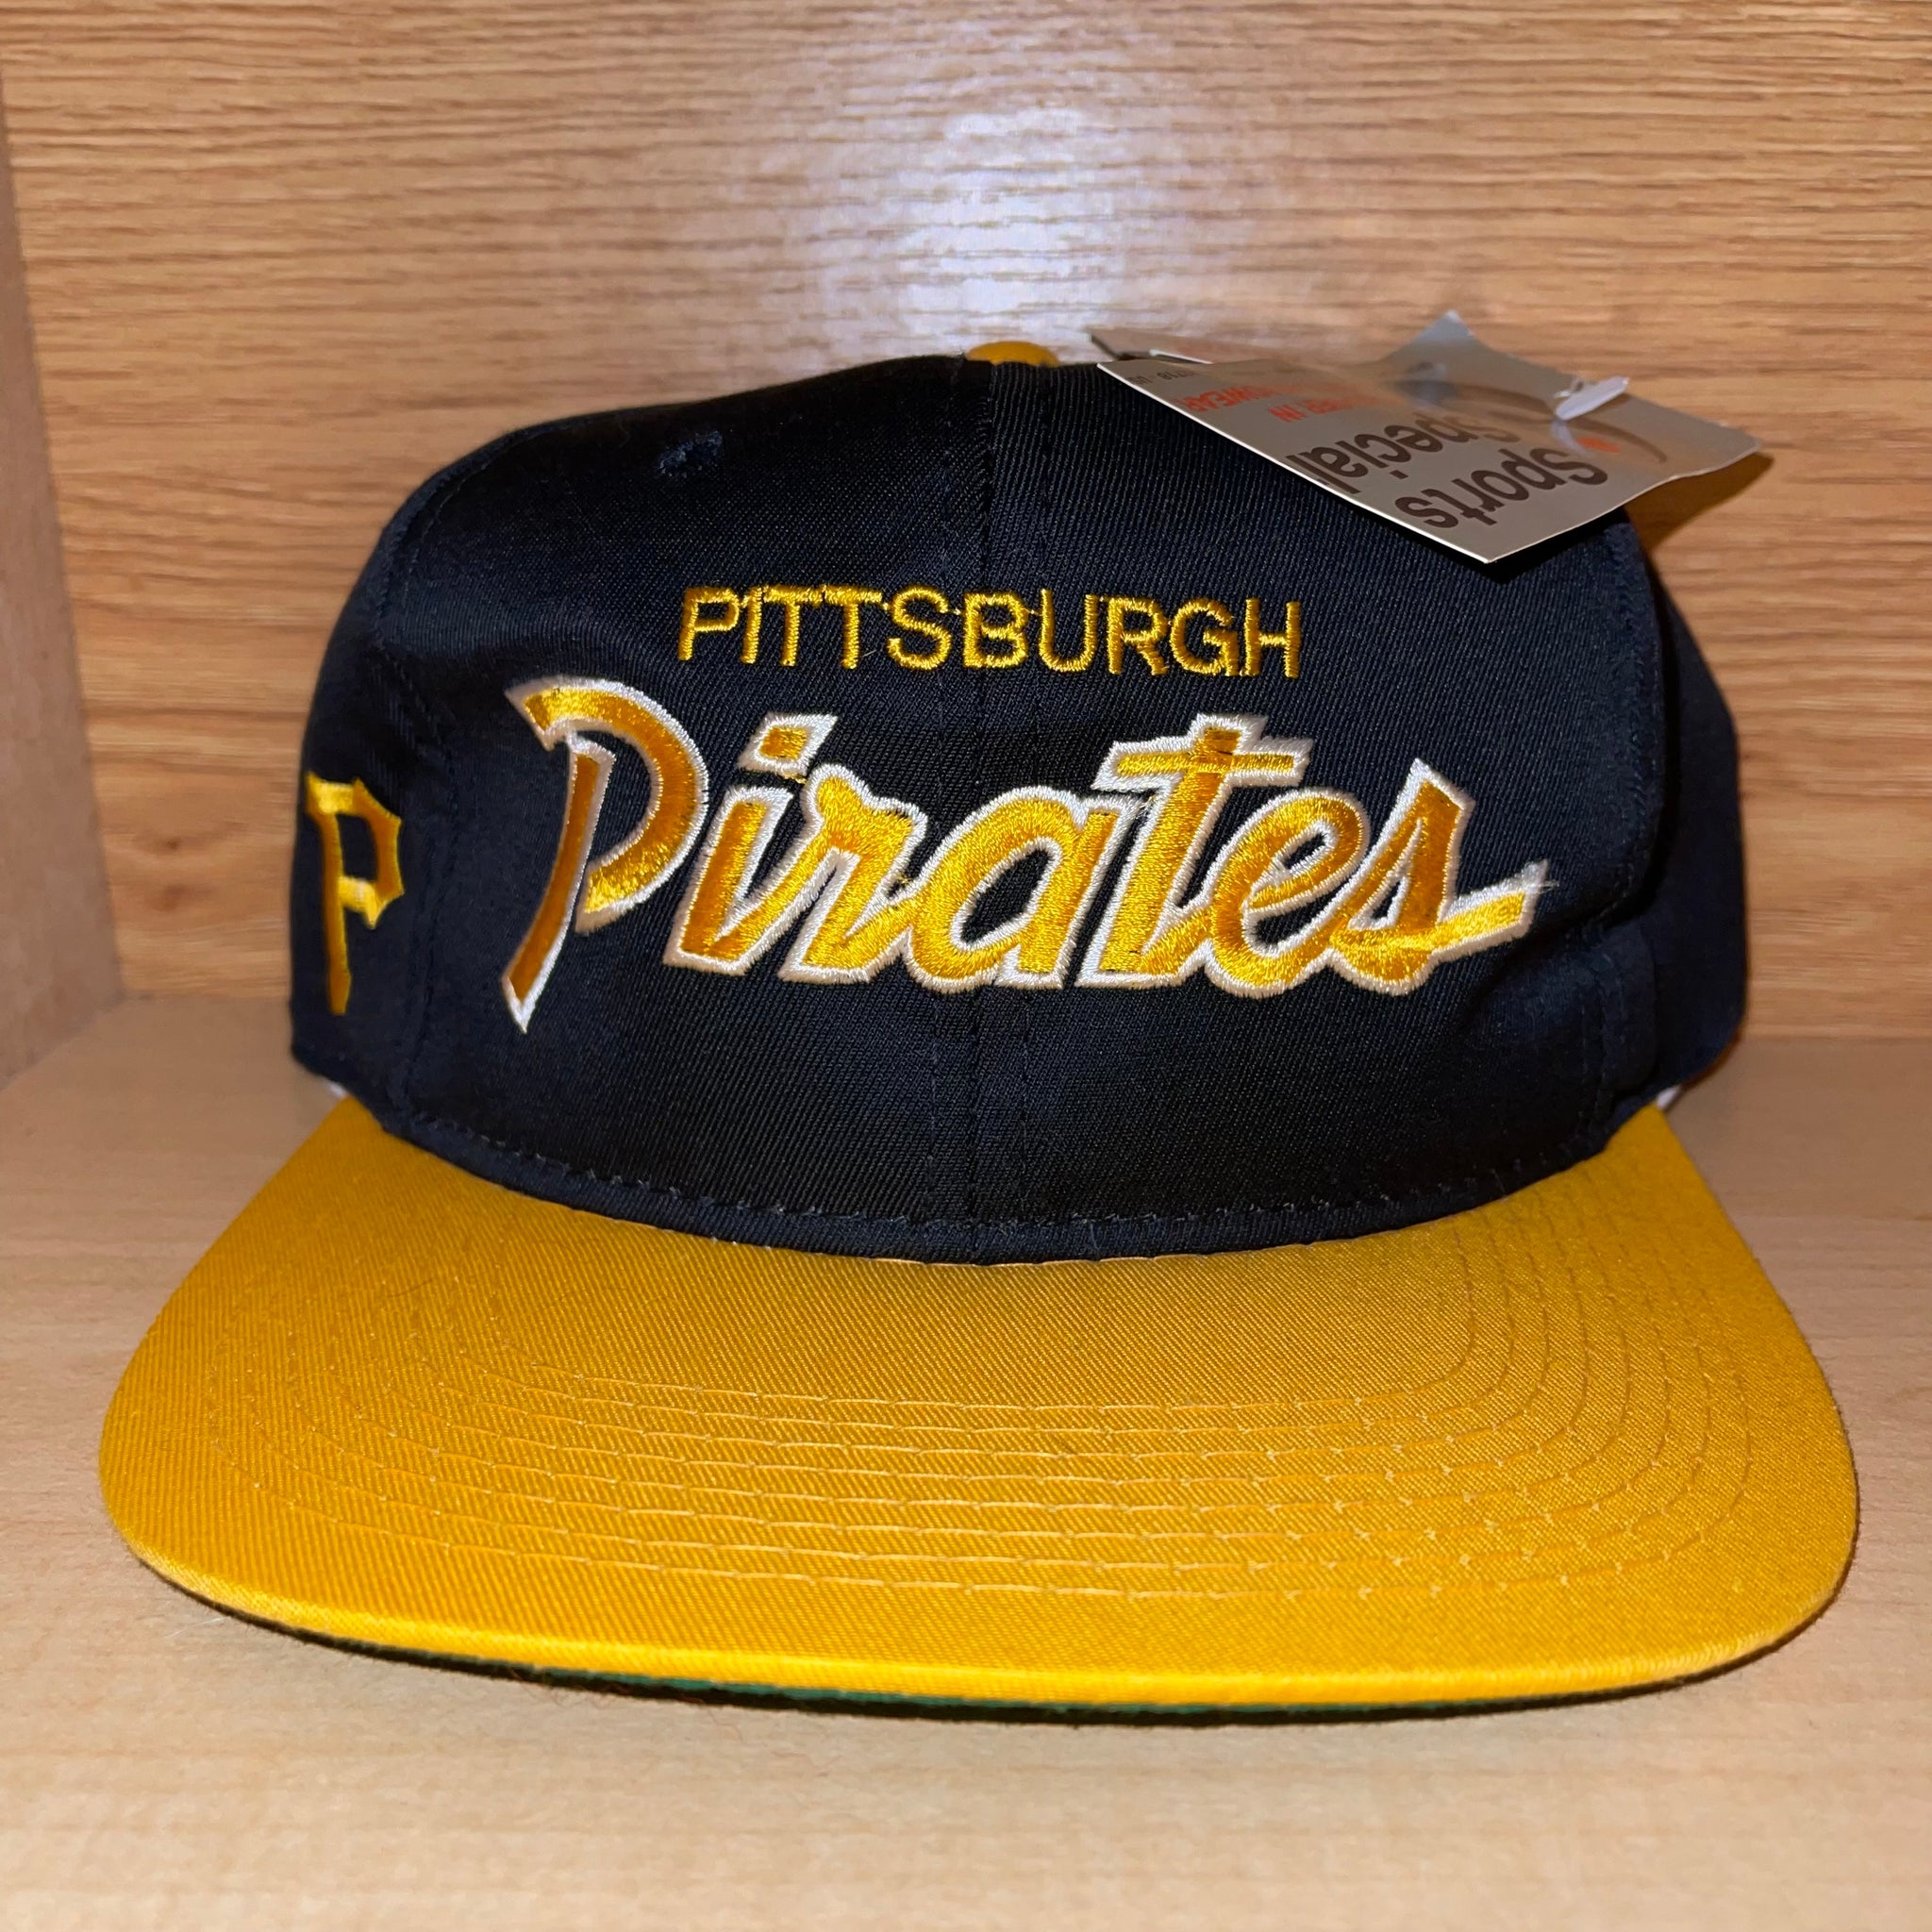 throwback pittsburgh pirates hat